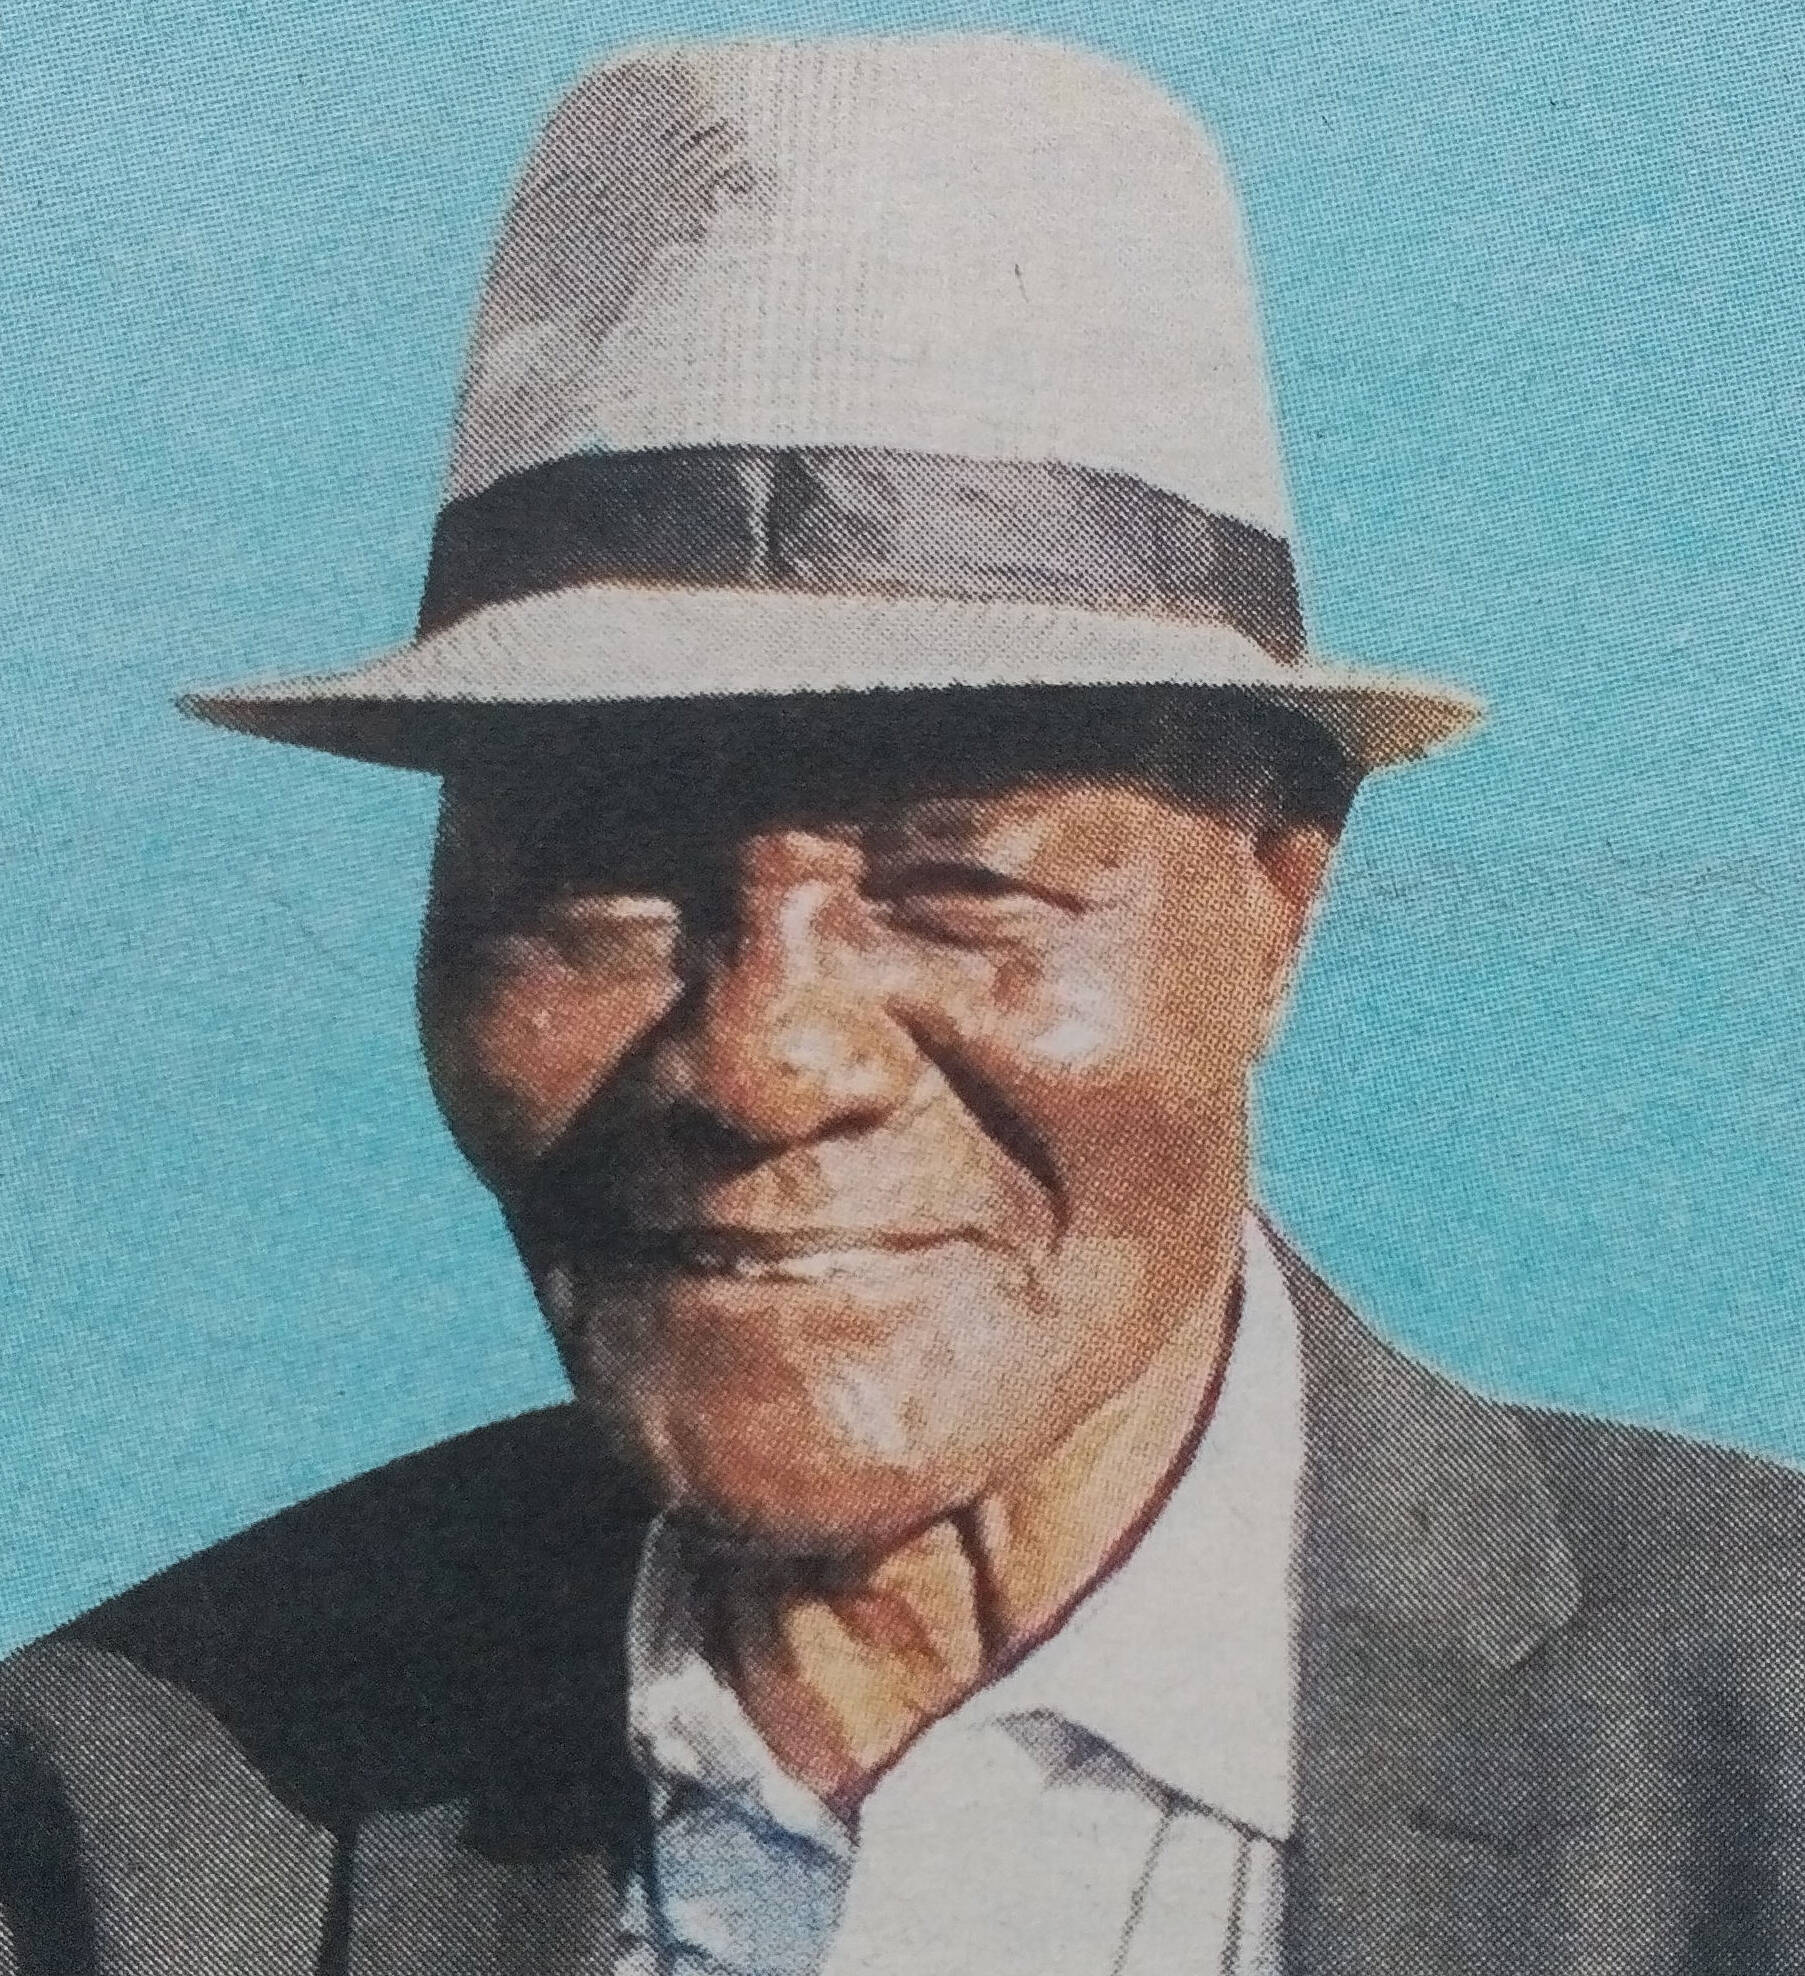 Obituary Image of Mzee Dan Ongolo Ogongo "Wuod Nyar Rambo"